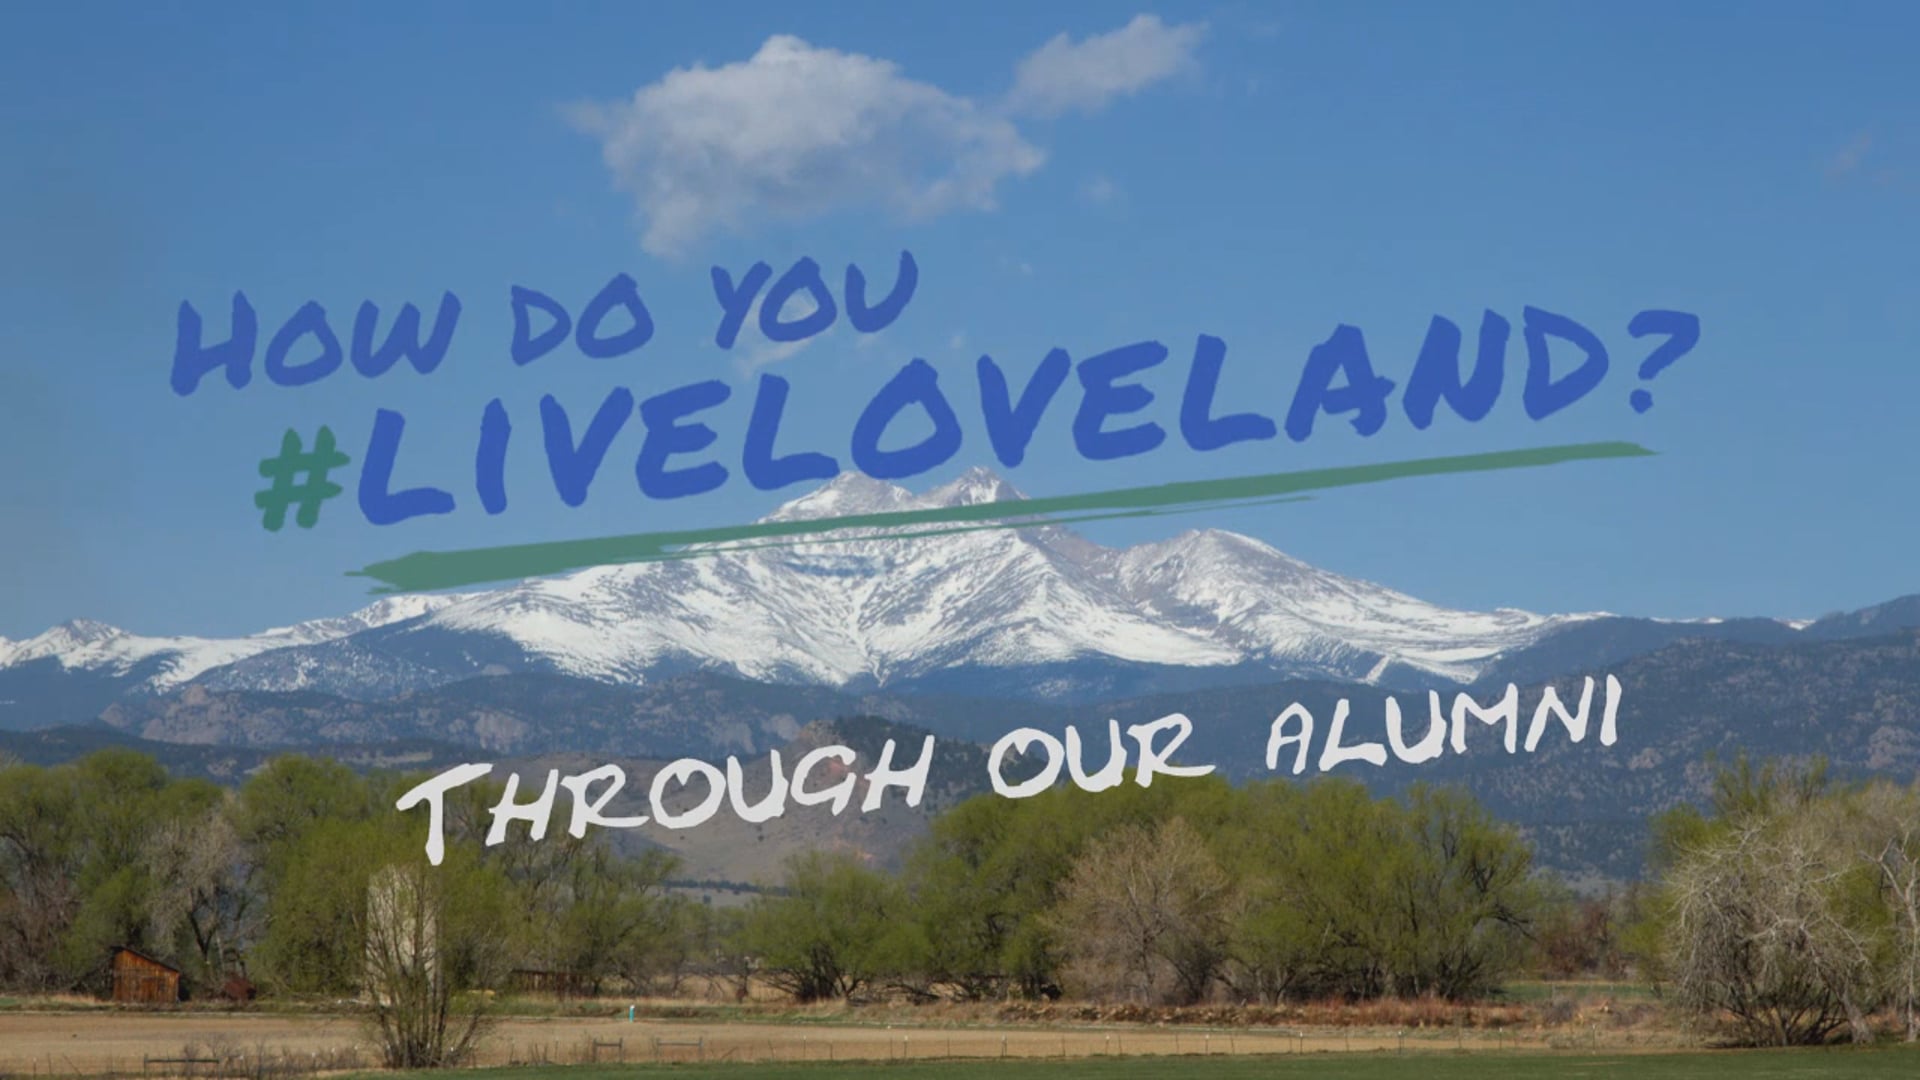 #Liveloveland: We Liveloveland Through Our Alumni